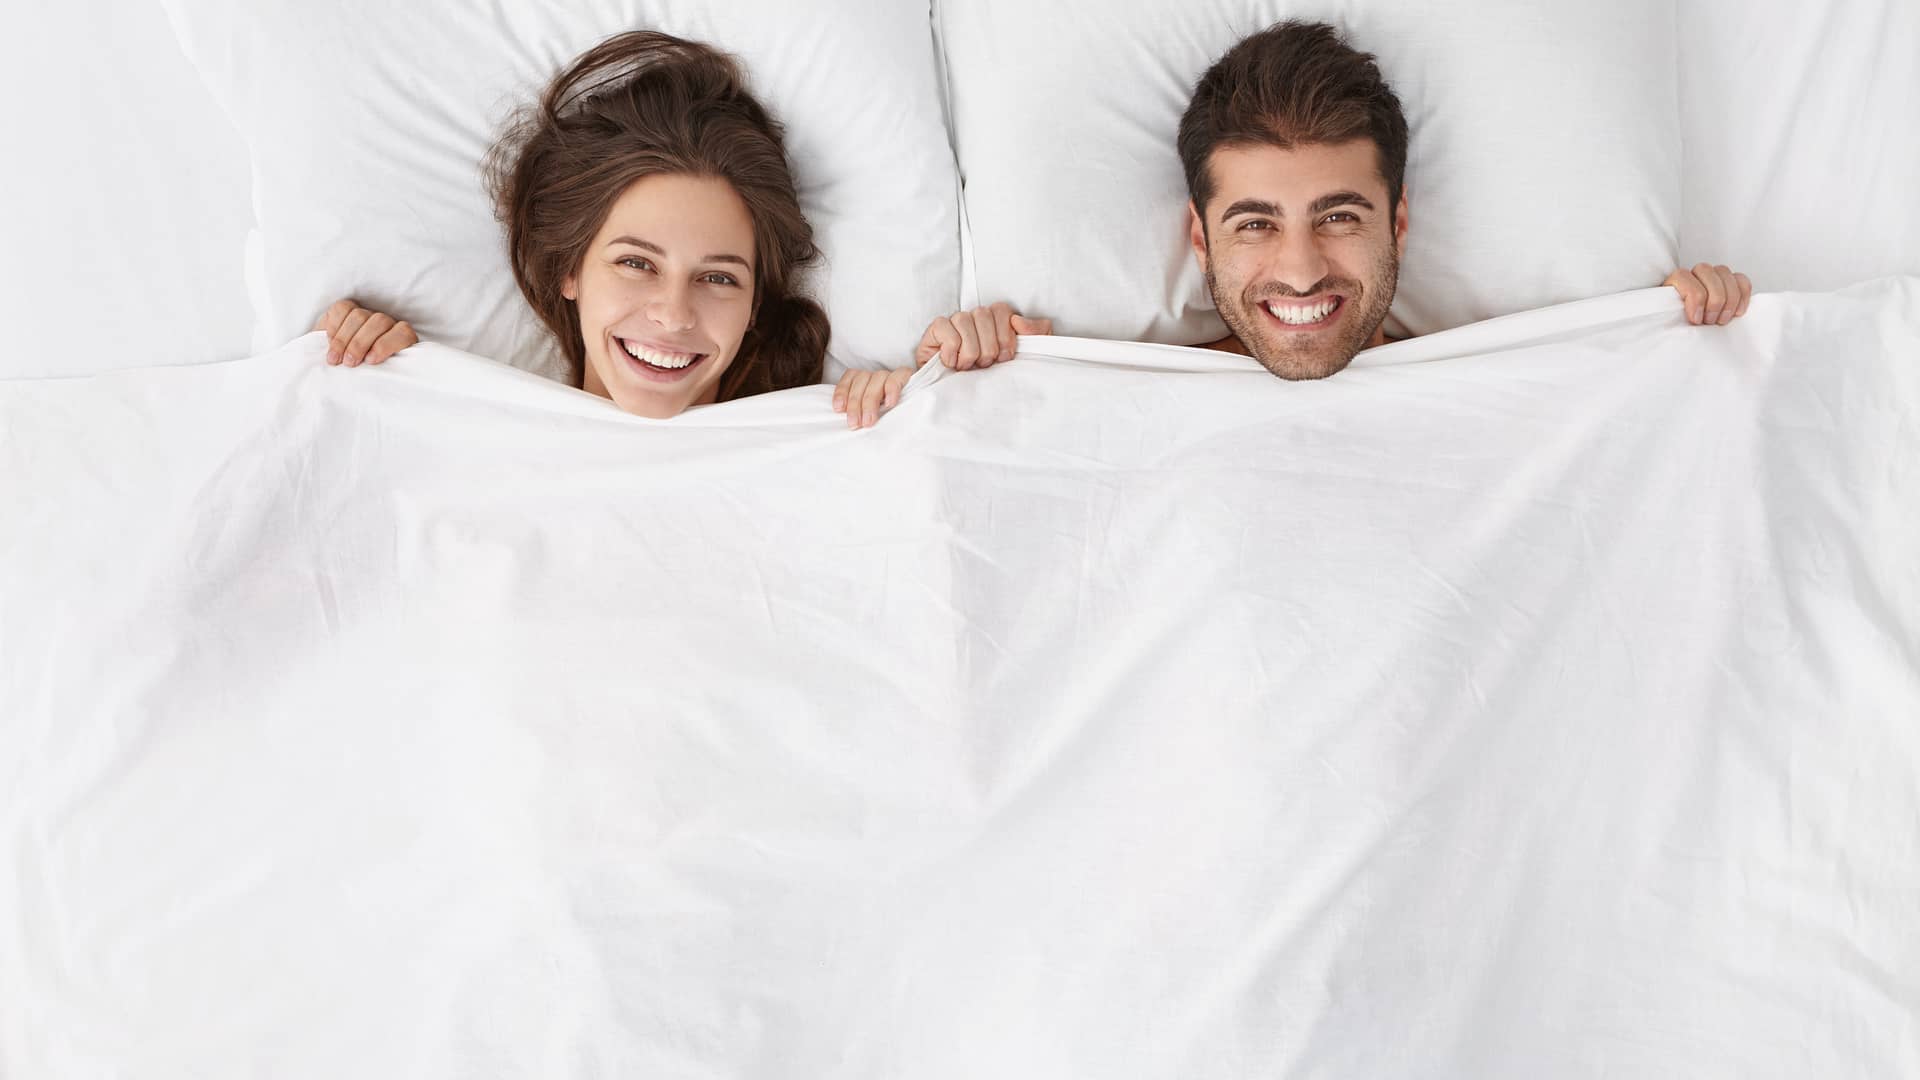 Una pareja contenta en la cama que representa el coito programado